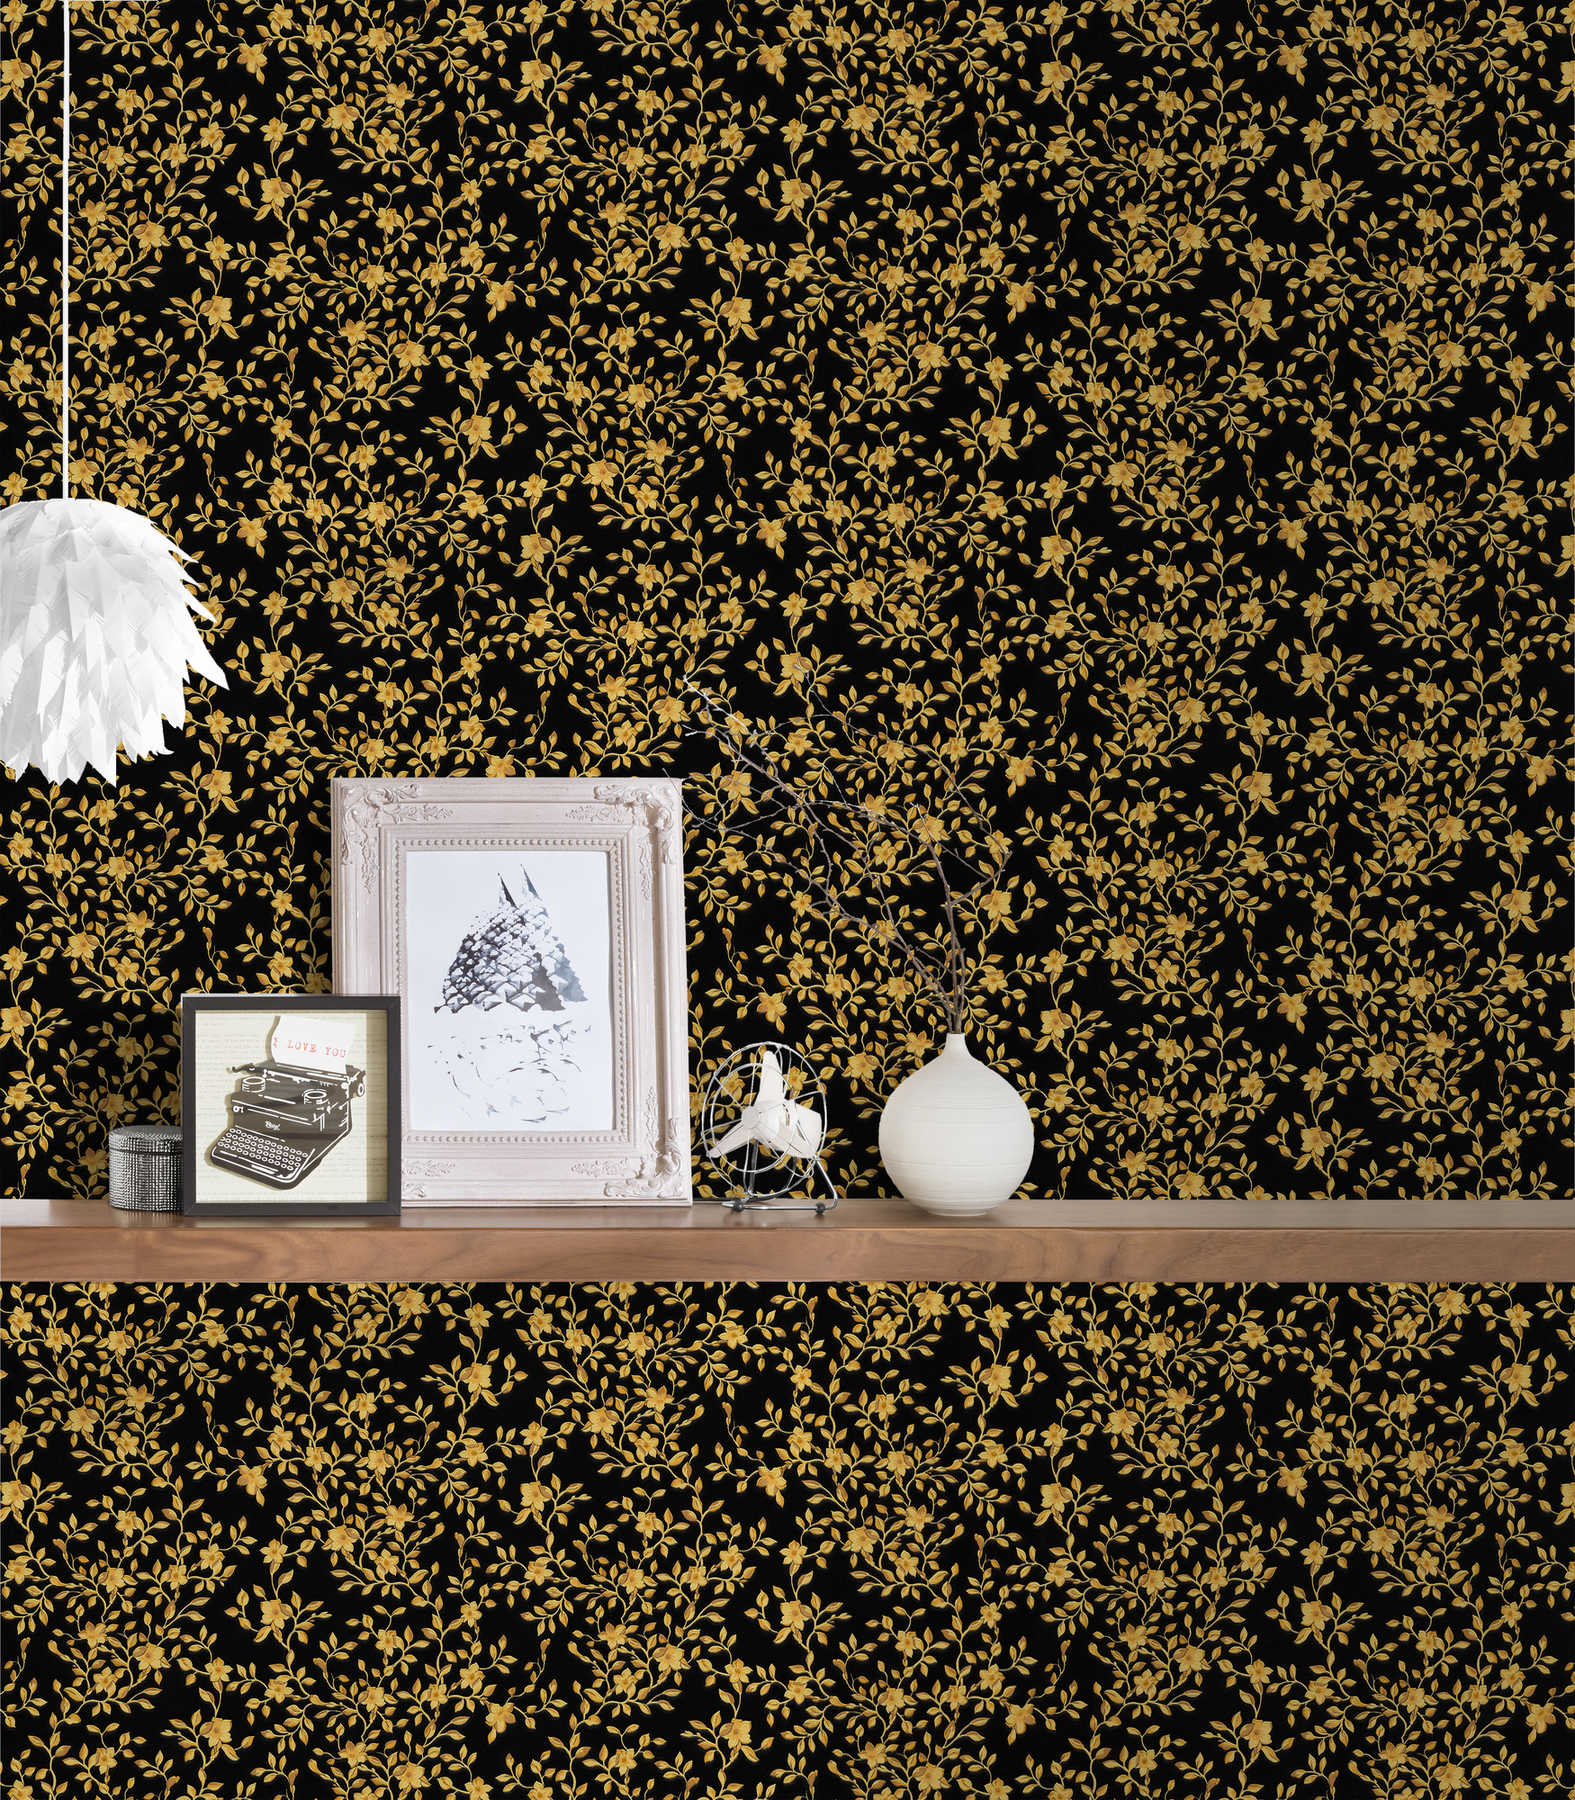             Zwart VERSACE-behang met gouden bladeren en bloemenranken
        